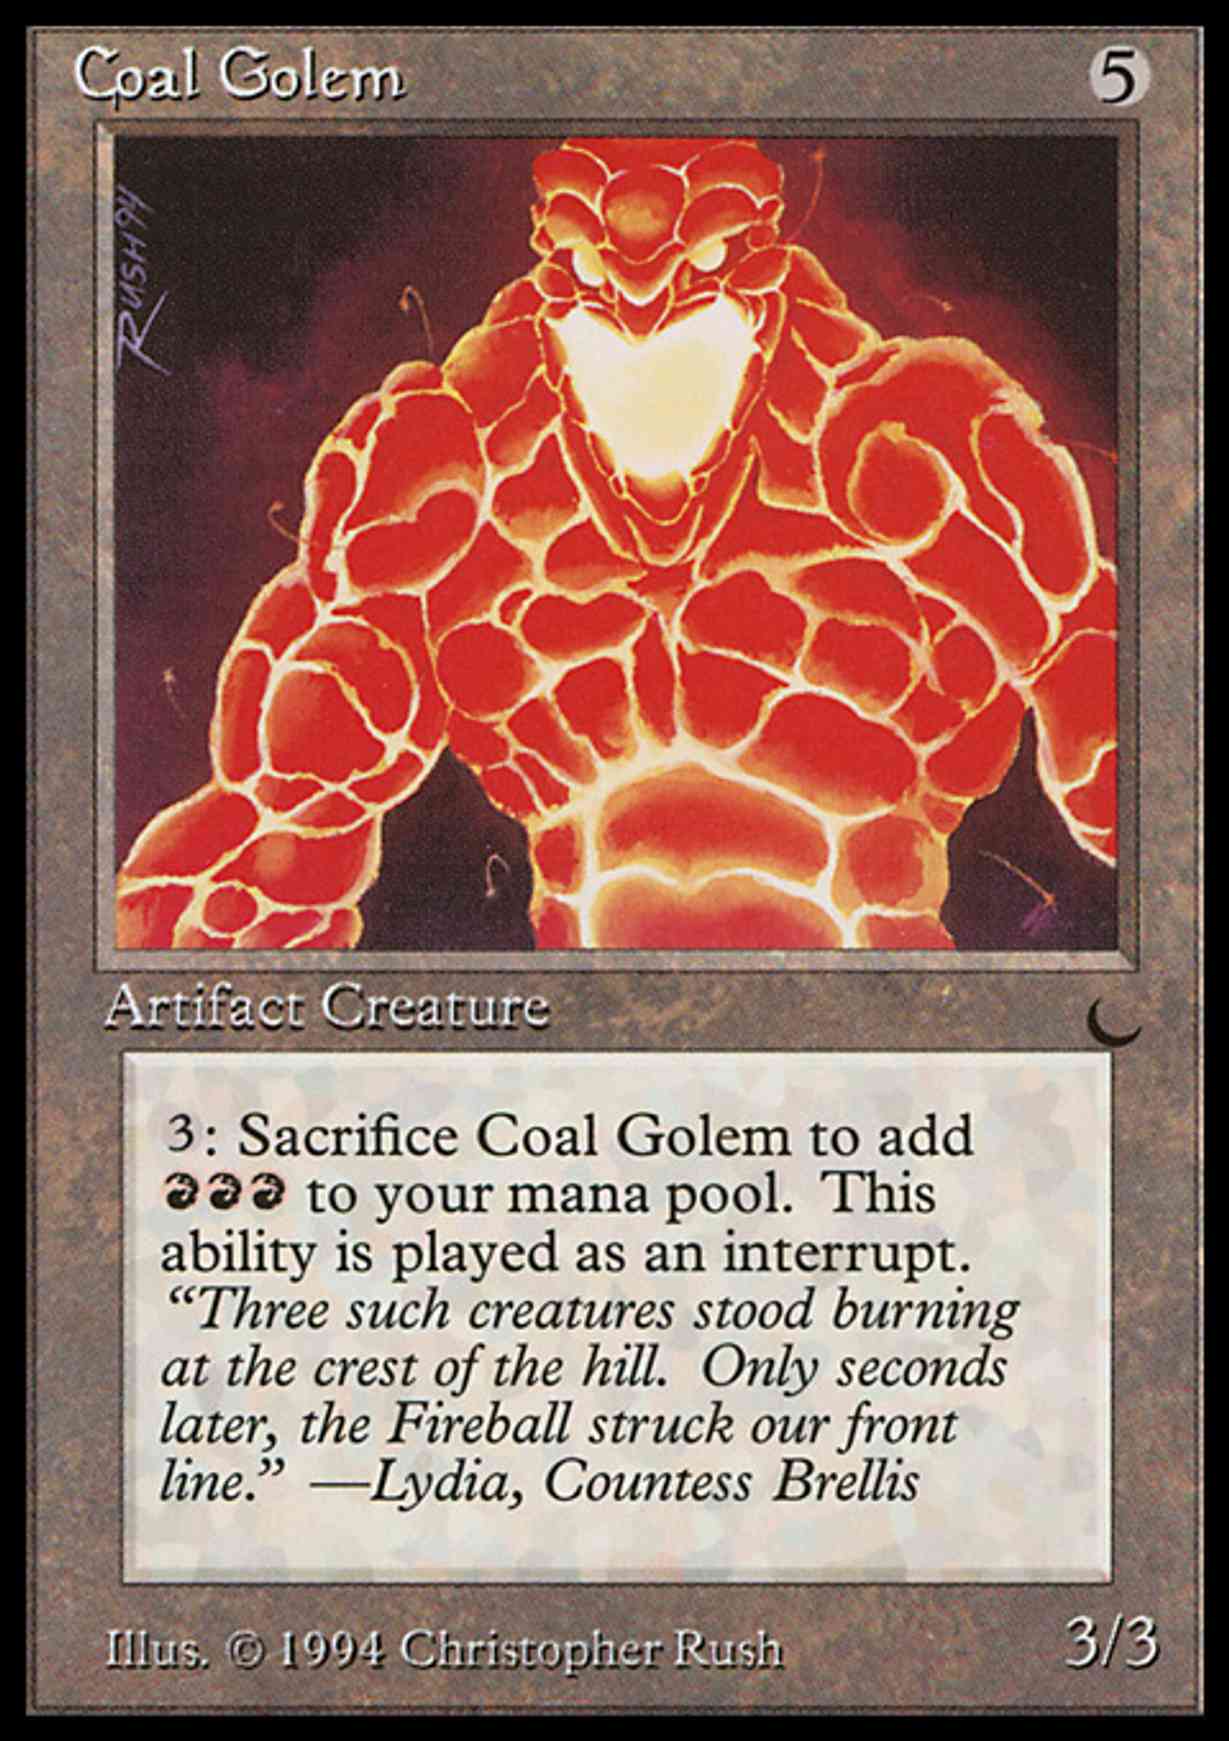 Coal Golem magic card front